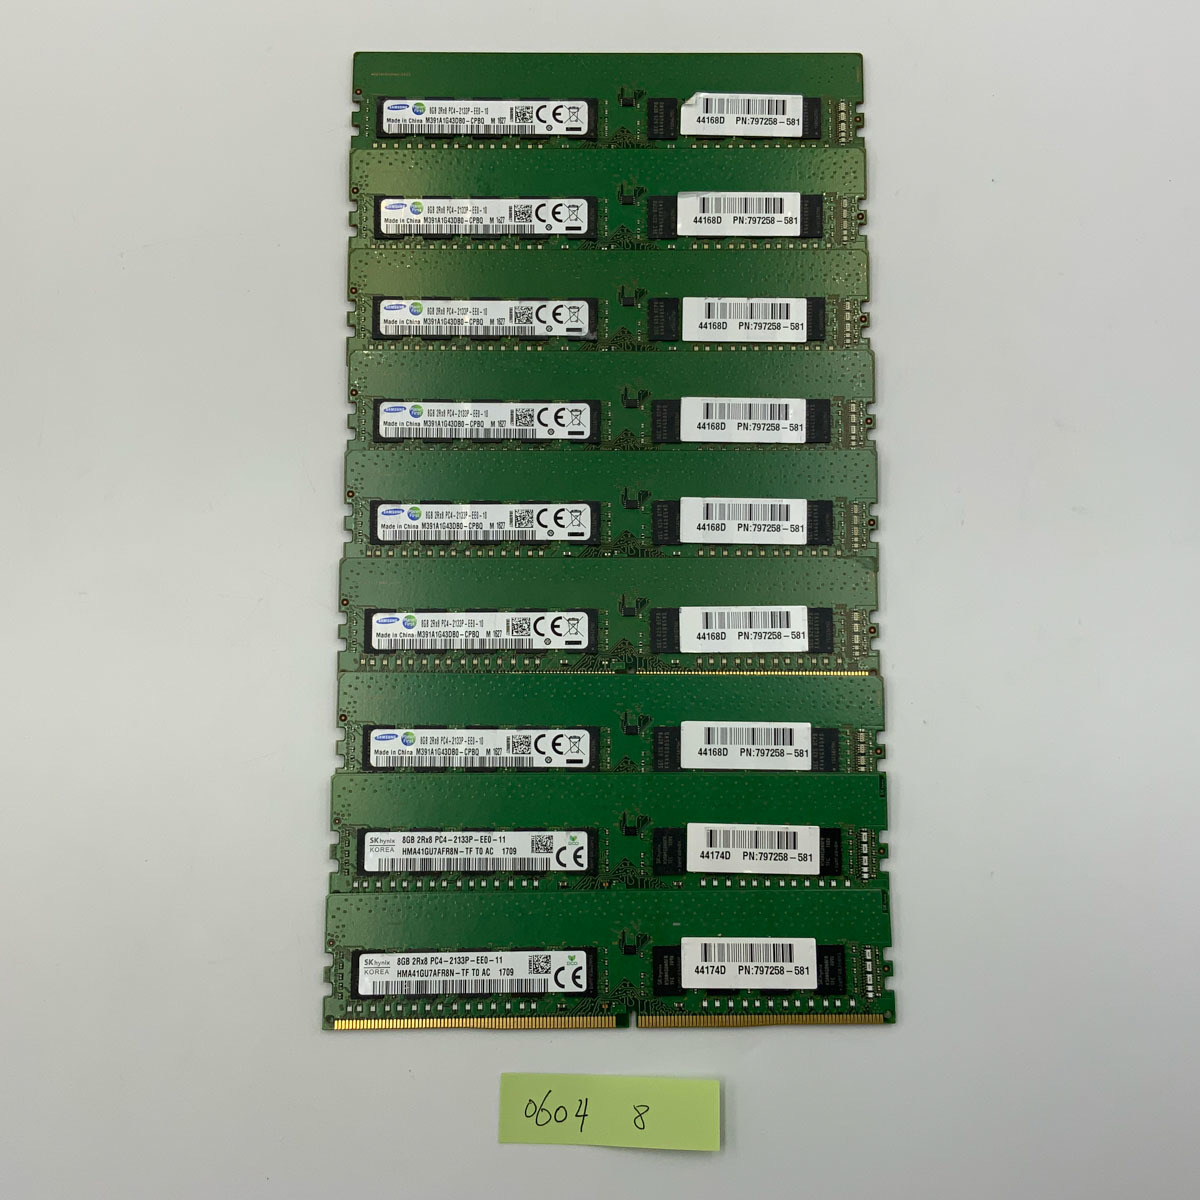 [サーバー用]Samusng等 メーカー混在 8G 合計9枚セット メモリ メモリー PC4-2133P EE0ECC DDR4-2133/PC4-17000 08